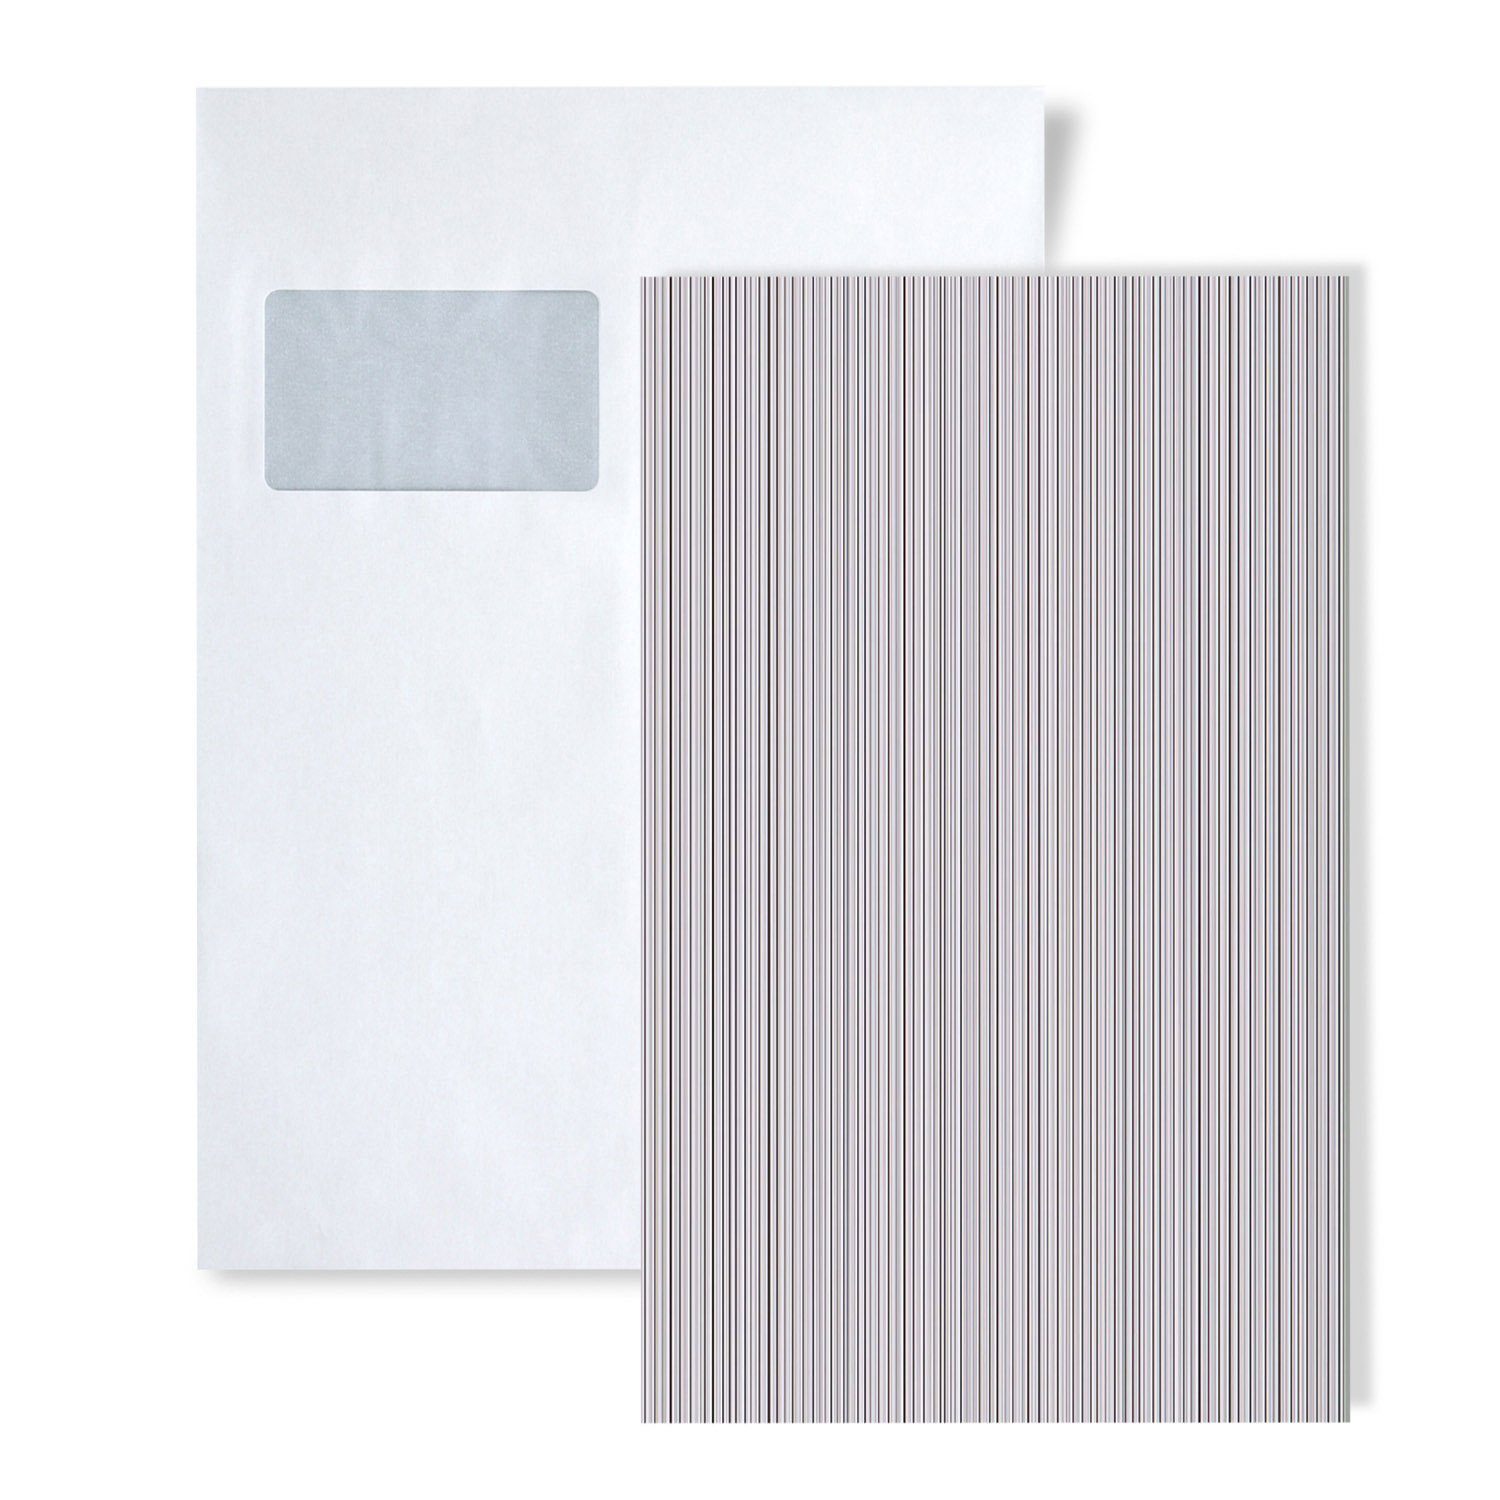 Edem Papiertapete S-598-20, gestreift, matt, unifarben, (1 Musterblatt, ca. A5-A4), grau, hell-grau, silber